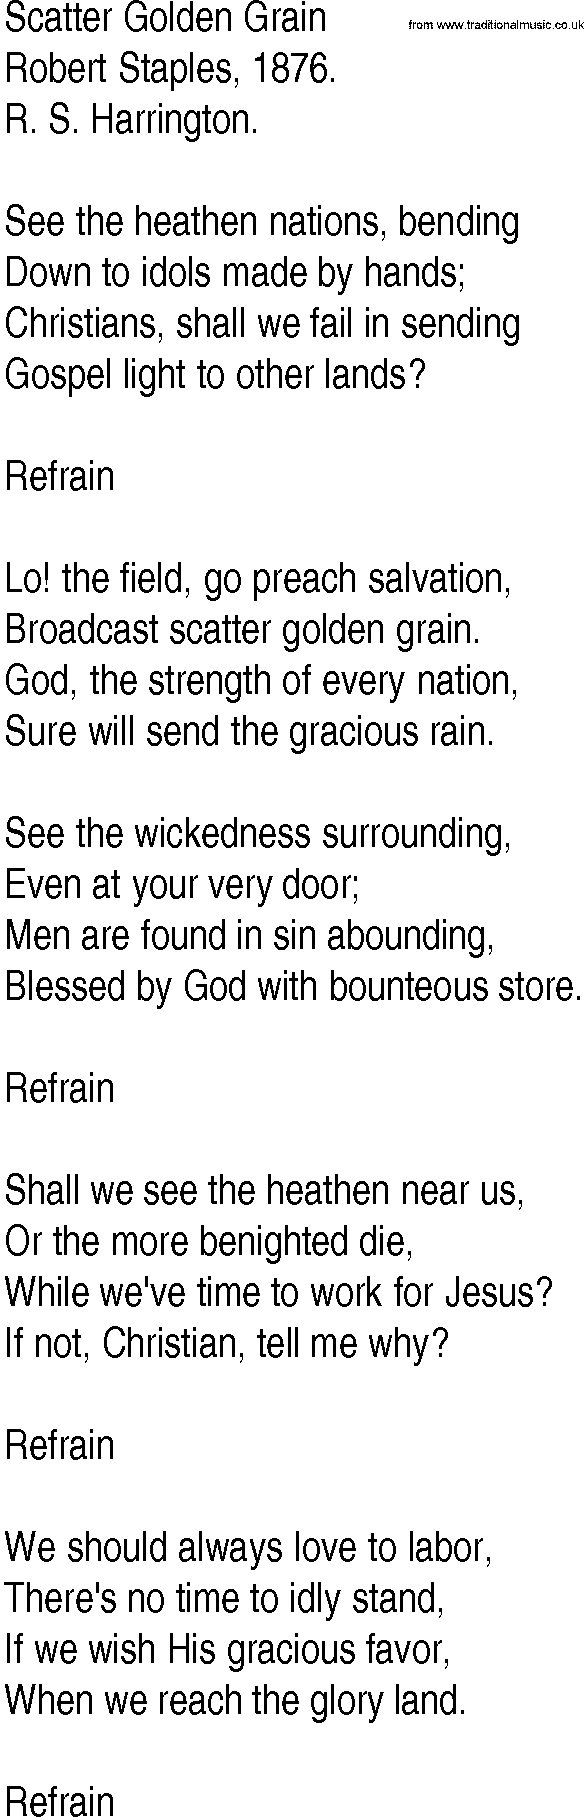 Hymn and Gospel Song: Scatter Golden Grain by Robert Staples lyrics